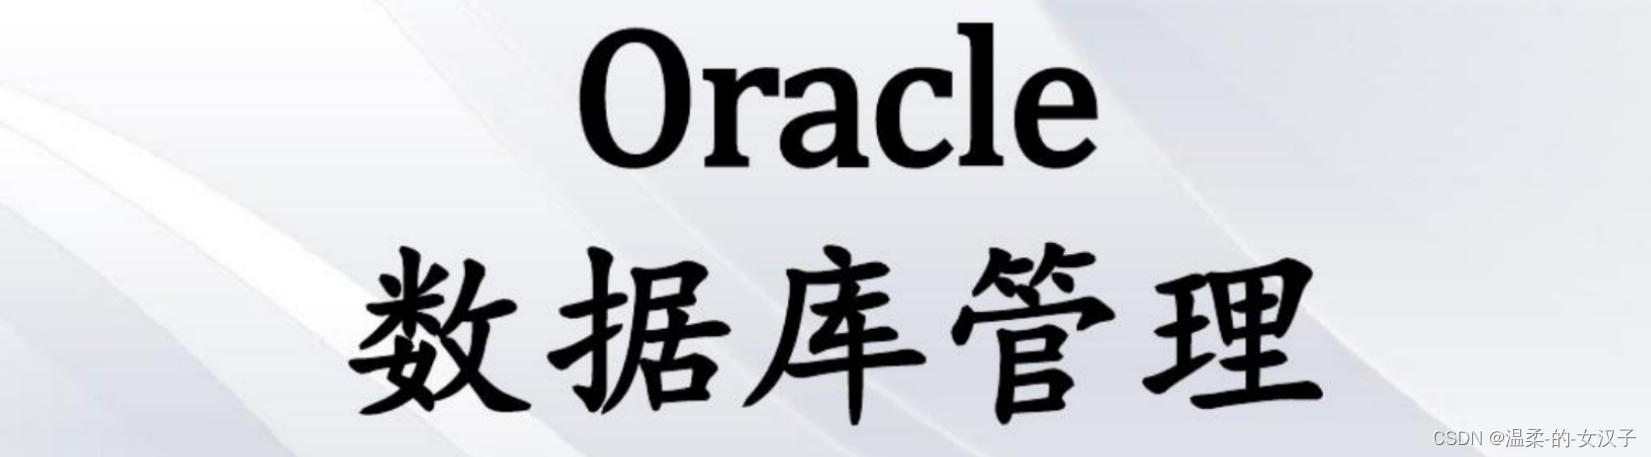 Oracle数据库如果出现乱码，需要查看是否时字符集不一致导致乱码，这样解决